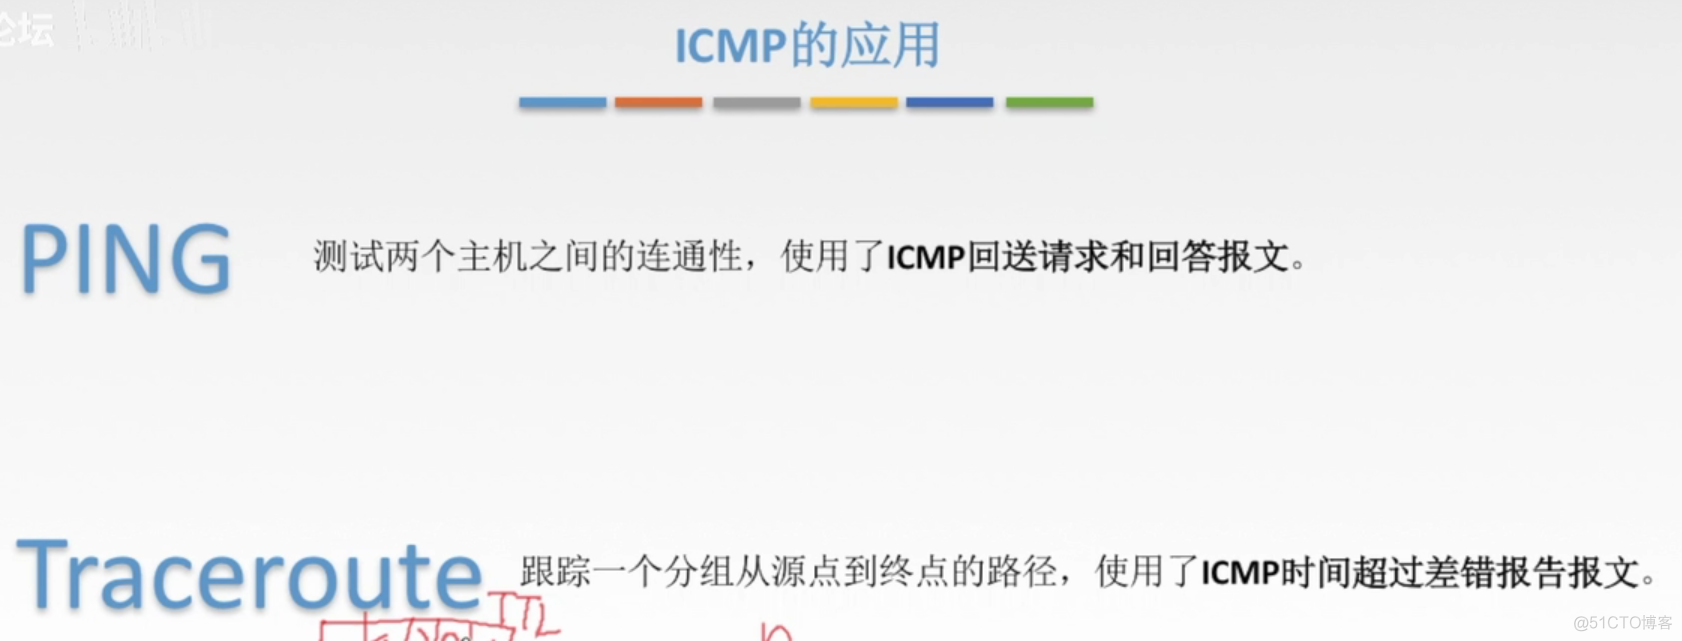 ARP、DHCP和ICMP协议_网络层_09